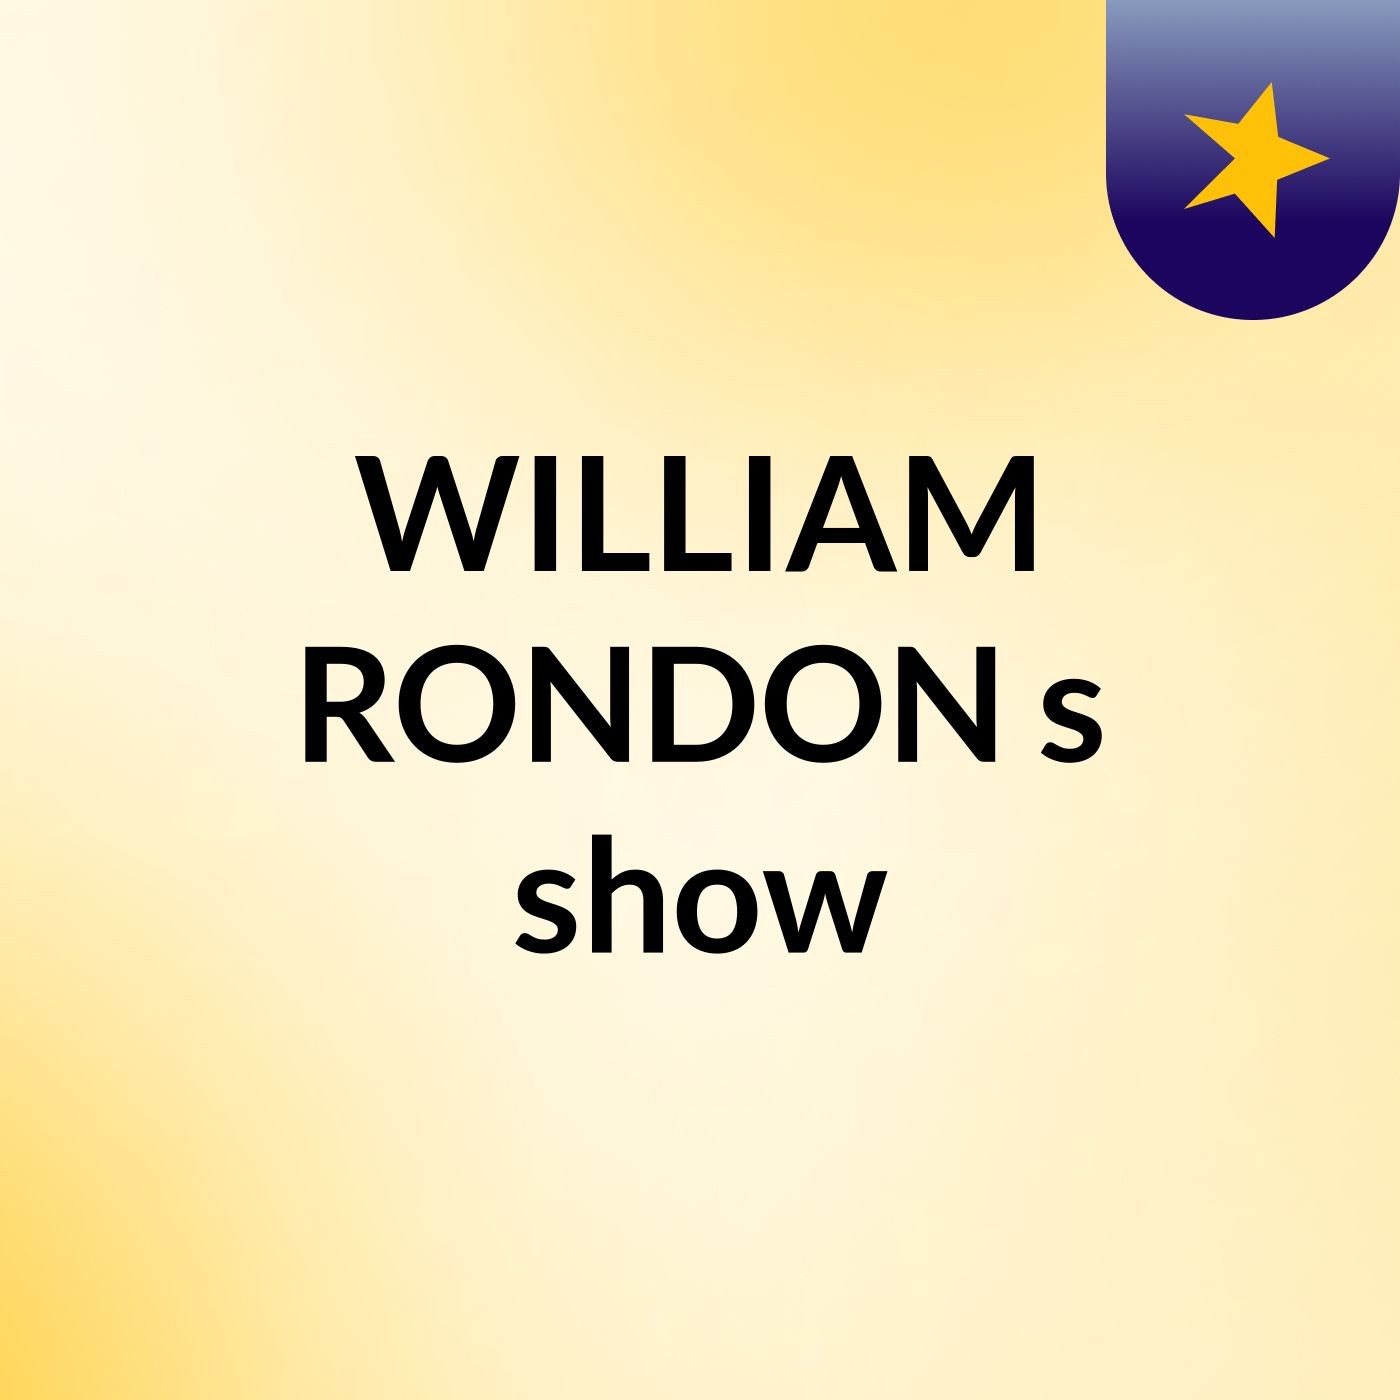 Episode 2 - WILLIAM RONDON's show